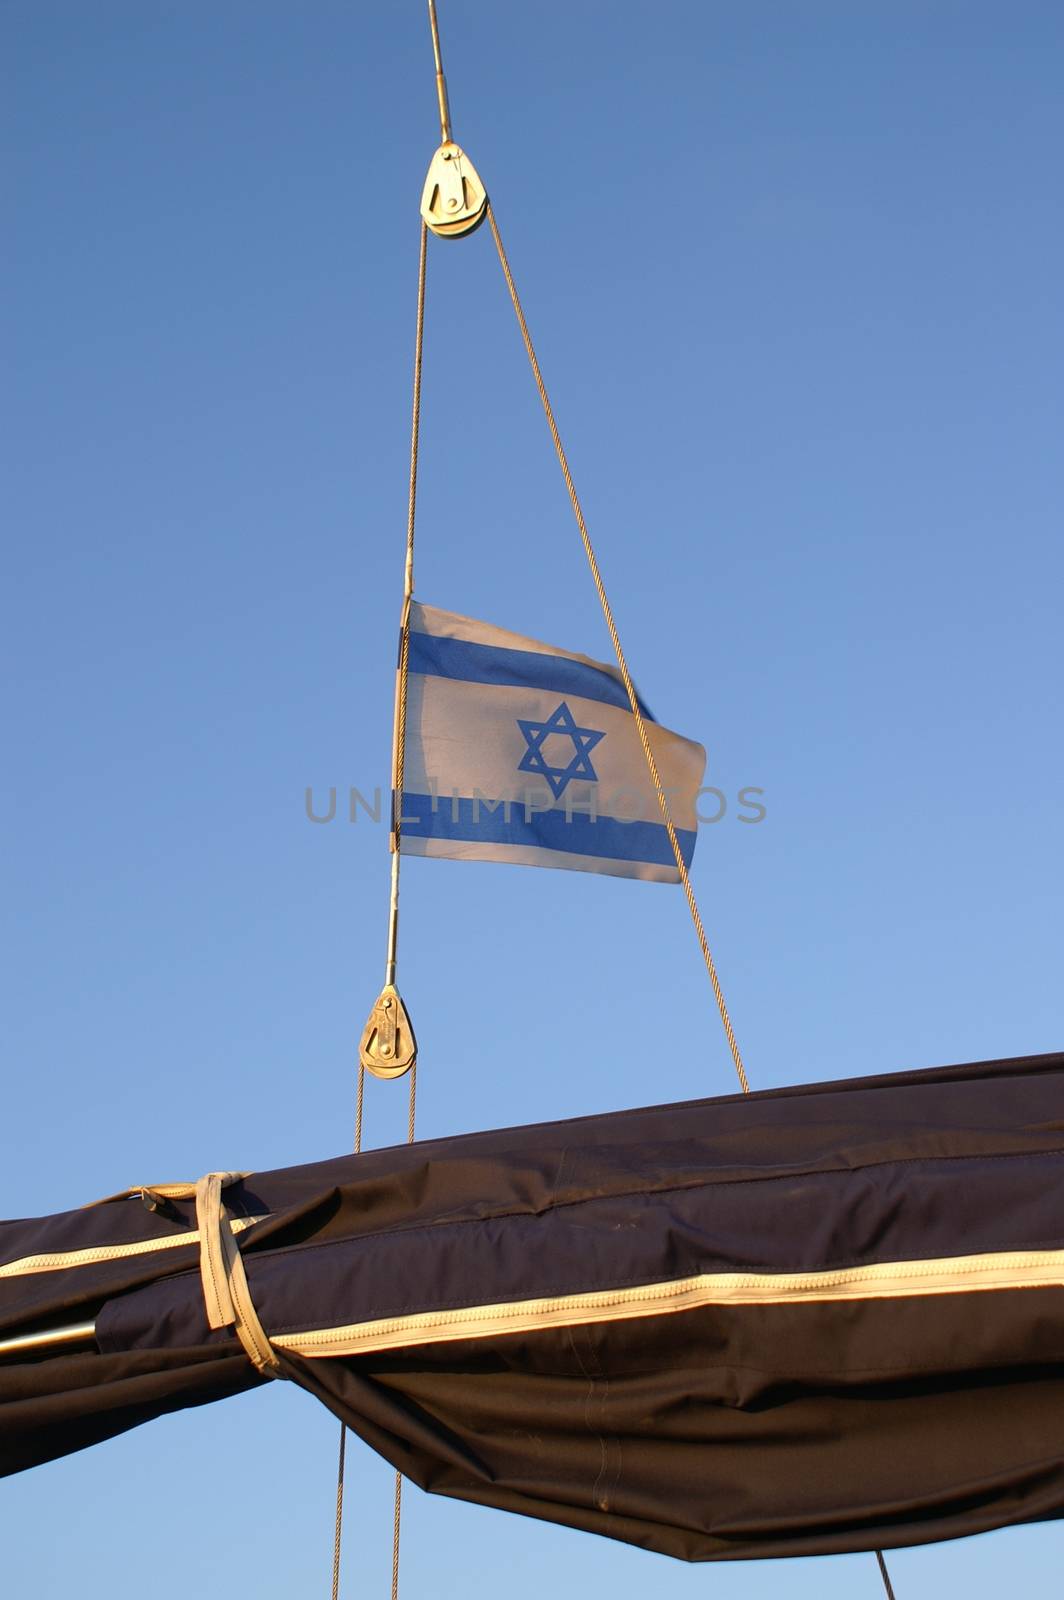 Flag of israel on a Yacht in Mediterranean sea